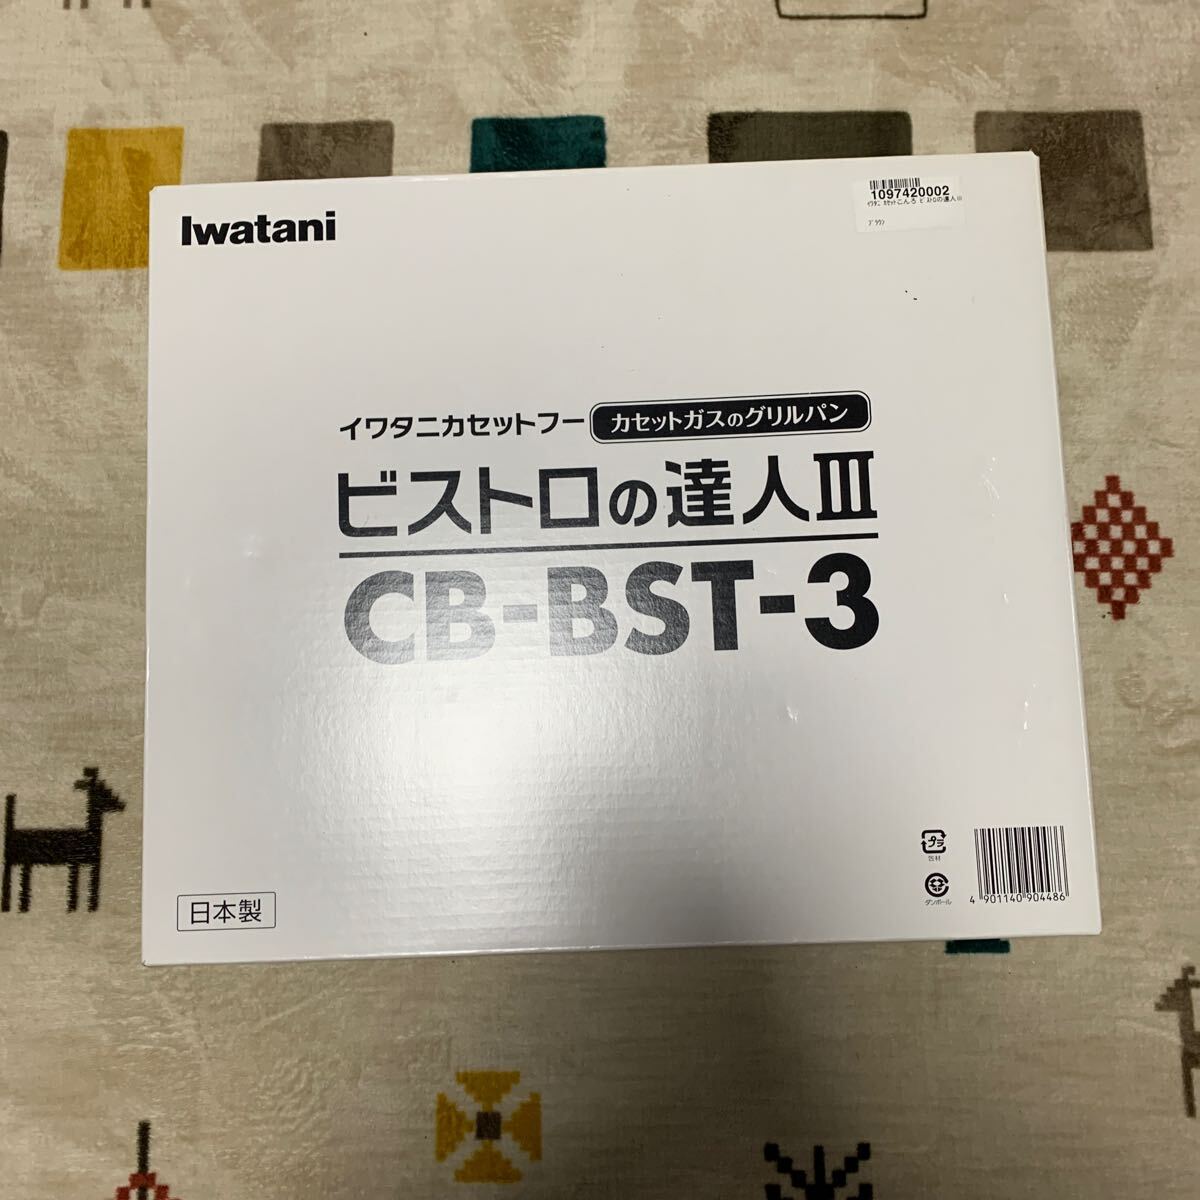 Iwatani イワタニ ビストロの達人Ⅲ CB-BST-3 カセットガスグリルパン カセットコンロ